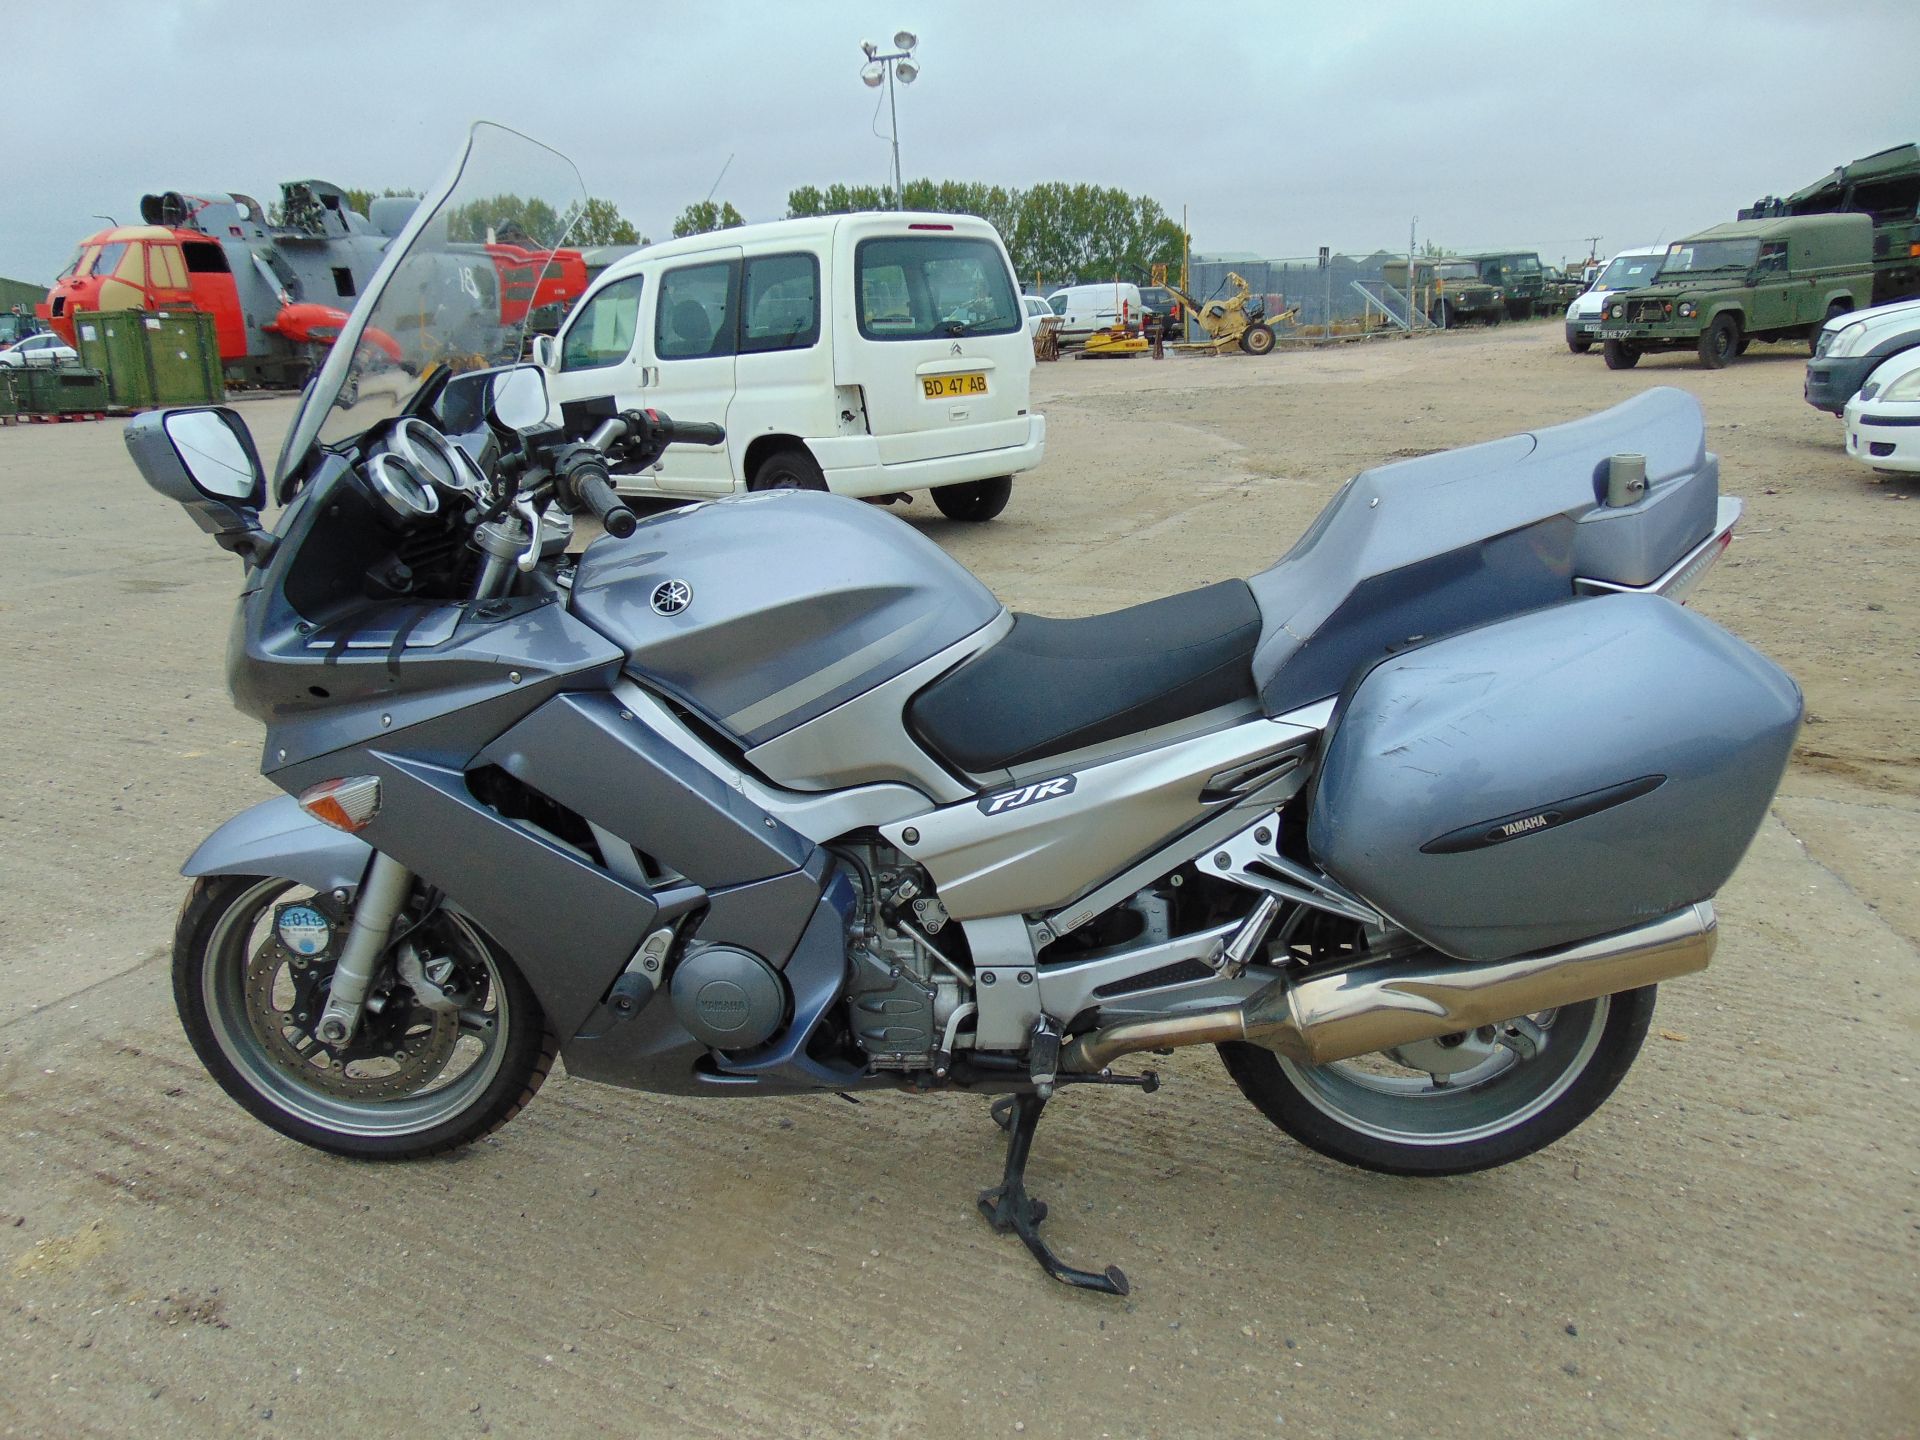 2008 Yamaha FJR1300 Motorbike - Image 4 of 15